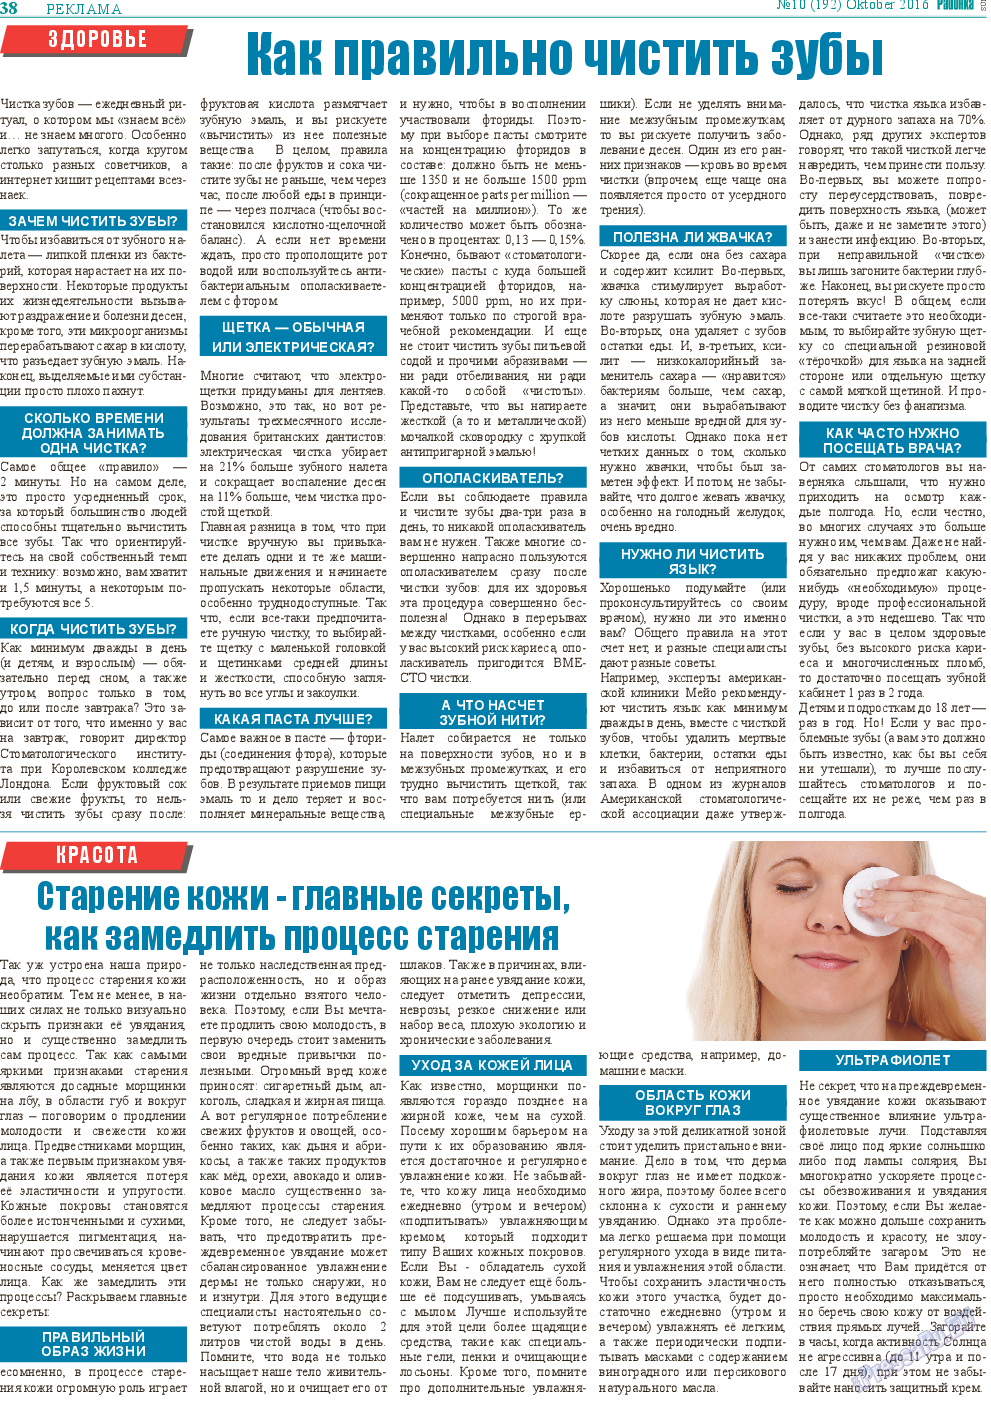 Районка-Süd-West, газета. 2016 №10 стр.38